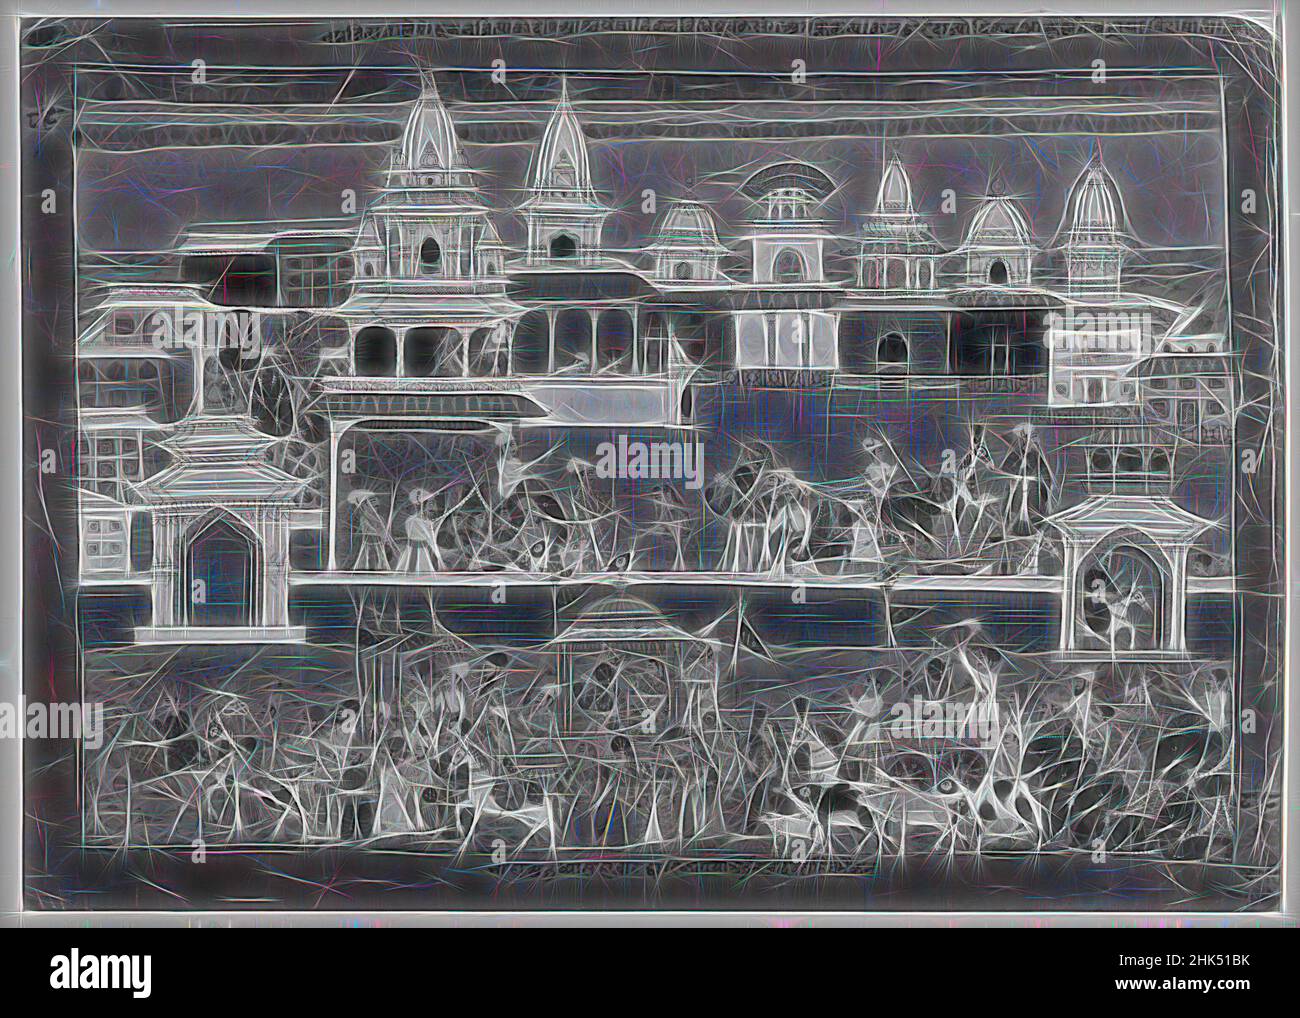 Inspiriert von Miniaturmalerei, opakes Aquarell auf Papier, Nepal, ca. 1800, 12 1/2 x 18 3/8 Zoll, 31,8 x 46,7 cm, neu erfunden von Artotop. Klassische Kunst neu erfunden mit einem modernen Twist. Design von warmen fröhlichen Leuchten der Helligkeit und Lichtstrahl Strahlkraft. Fotografie inspiriert von Surrealismus und Futurismus, umarmt dynamische Energie der modernen Technologie, Bewegung, Geschwindigkeit und Kultur zu revolutionieren Stockfoto